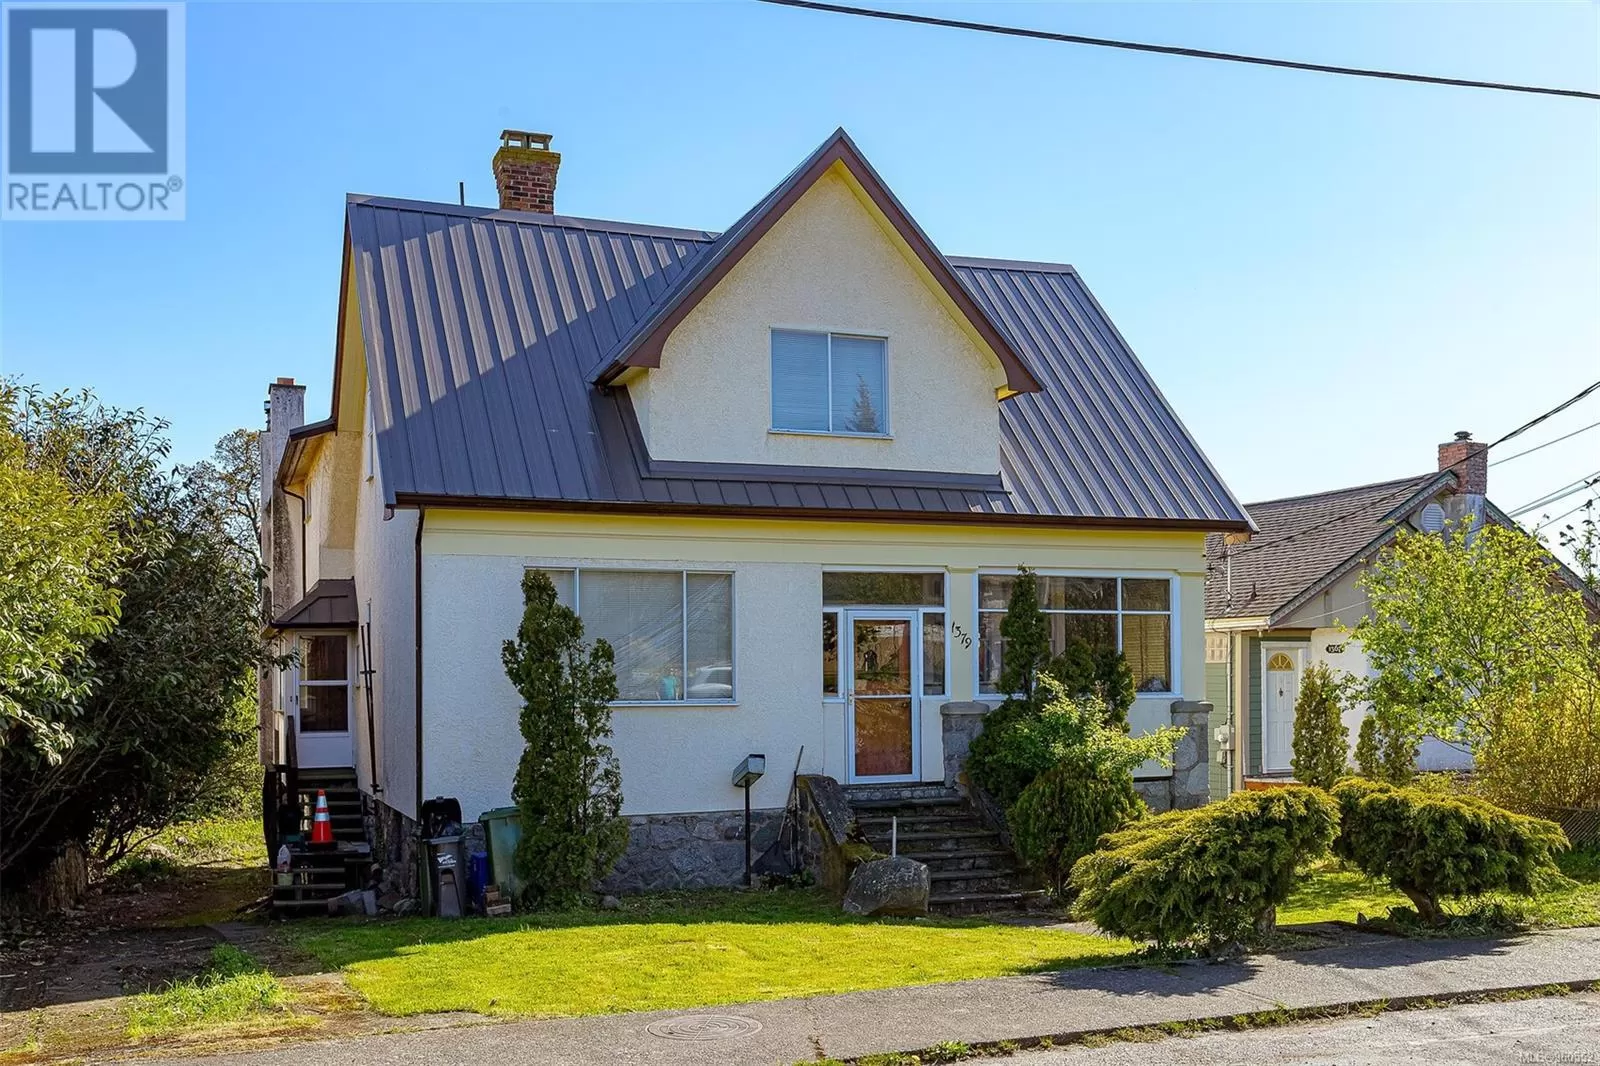 House for rent: 1379 Vista Hts, Victoria, British Columbia V8T 2J2